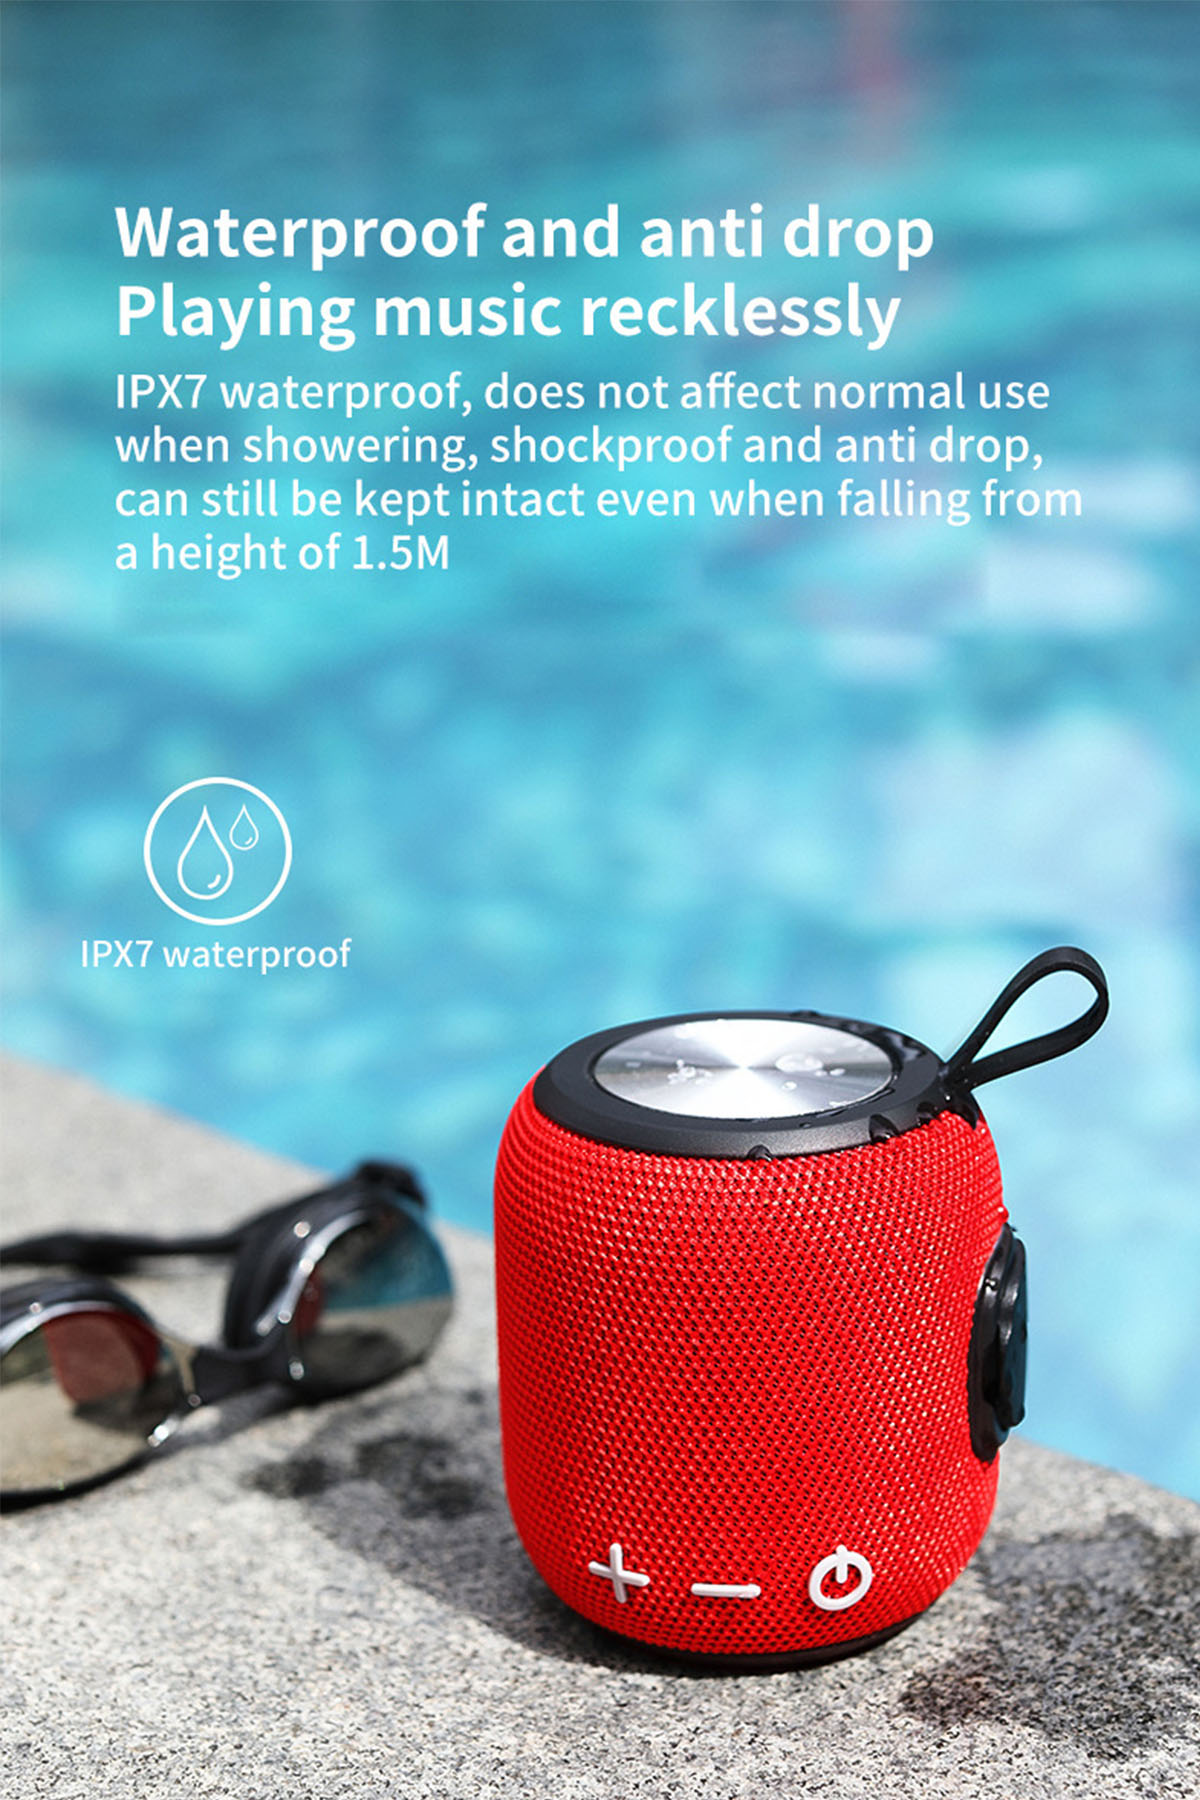 BRIGHTAKE SoundWave: HIFI Bluetooth-Lautsprecher, Langzeitbatterie Sound, Outdoor-Tauglich, Blau-grün